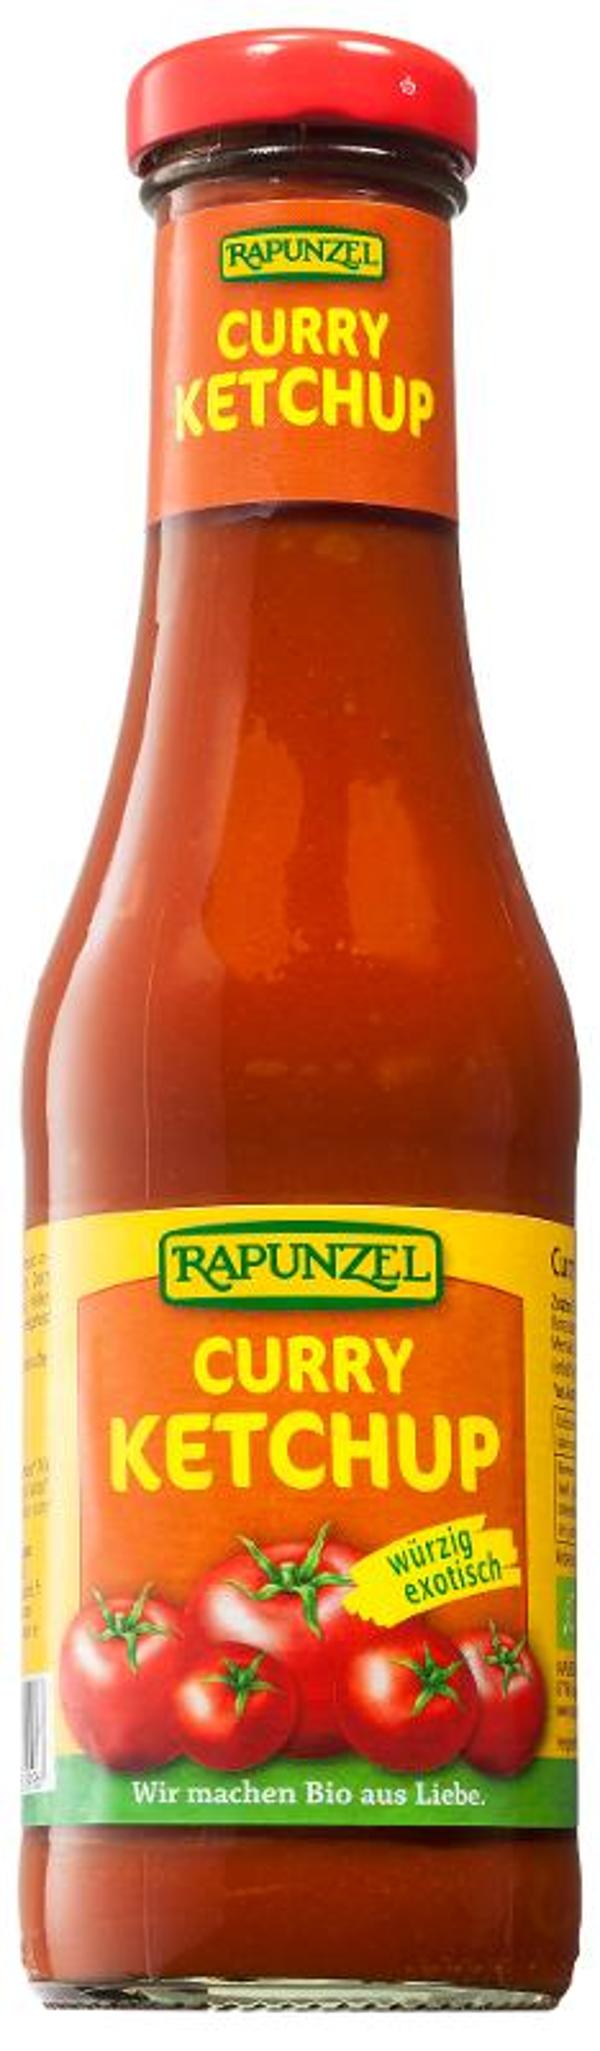 Produktfoto zu Curry Ketchup 450ml Rapunzel